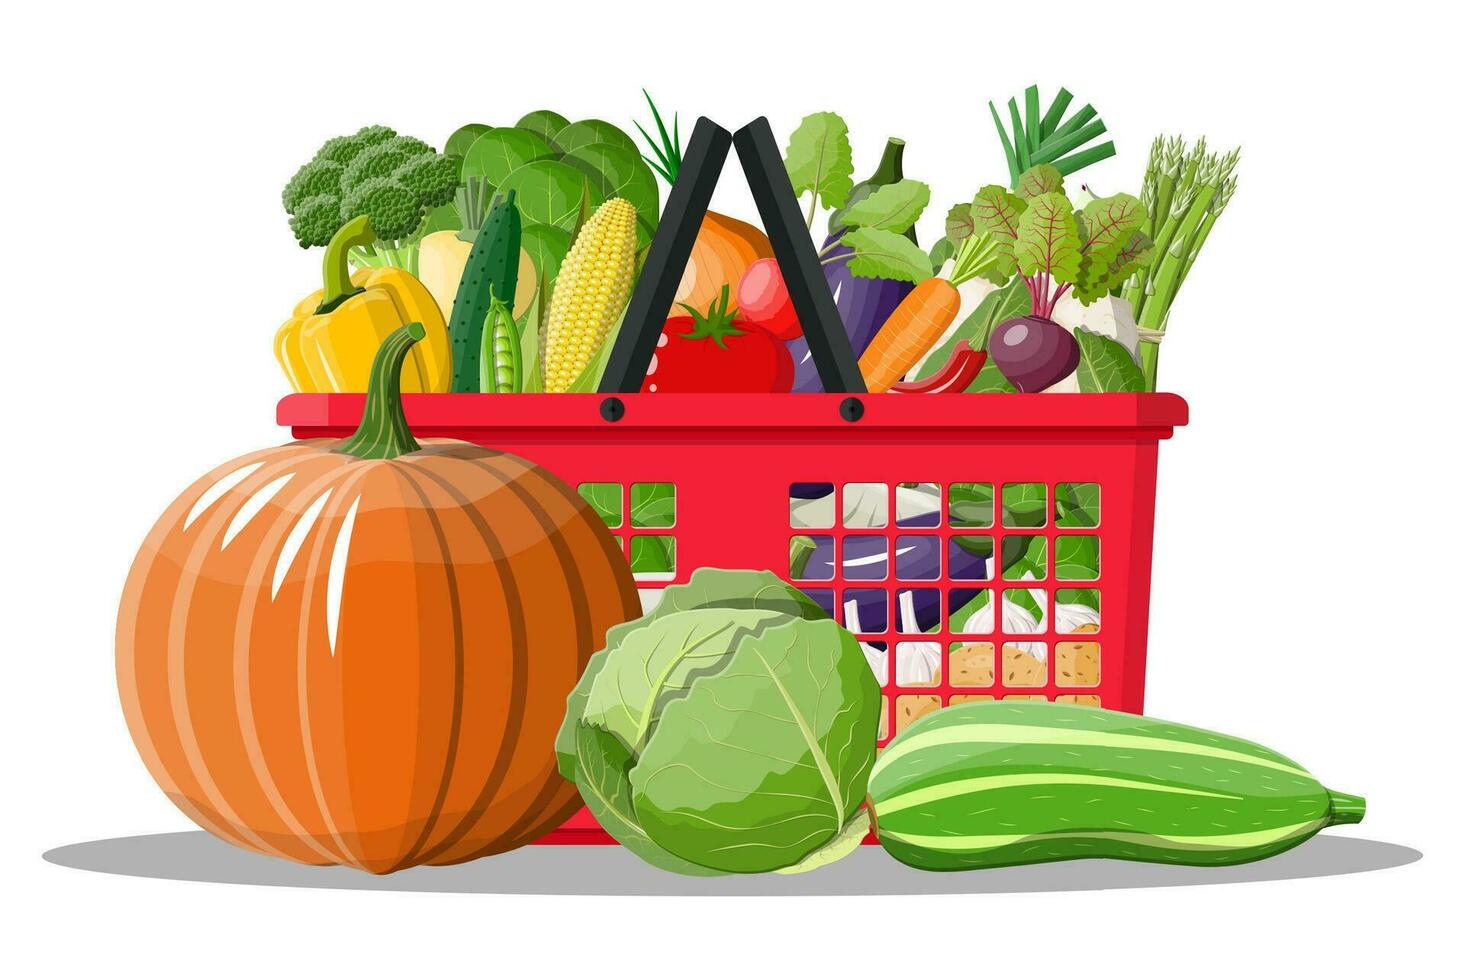 plast handla korg full av grönsaker. jordbruk färsk mat, organisk lantbruk Produkter. lök, kål, peppar, pumpa, gurka, tomat och Övrig grönsaker. vektor illustration platt stil